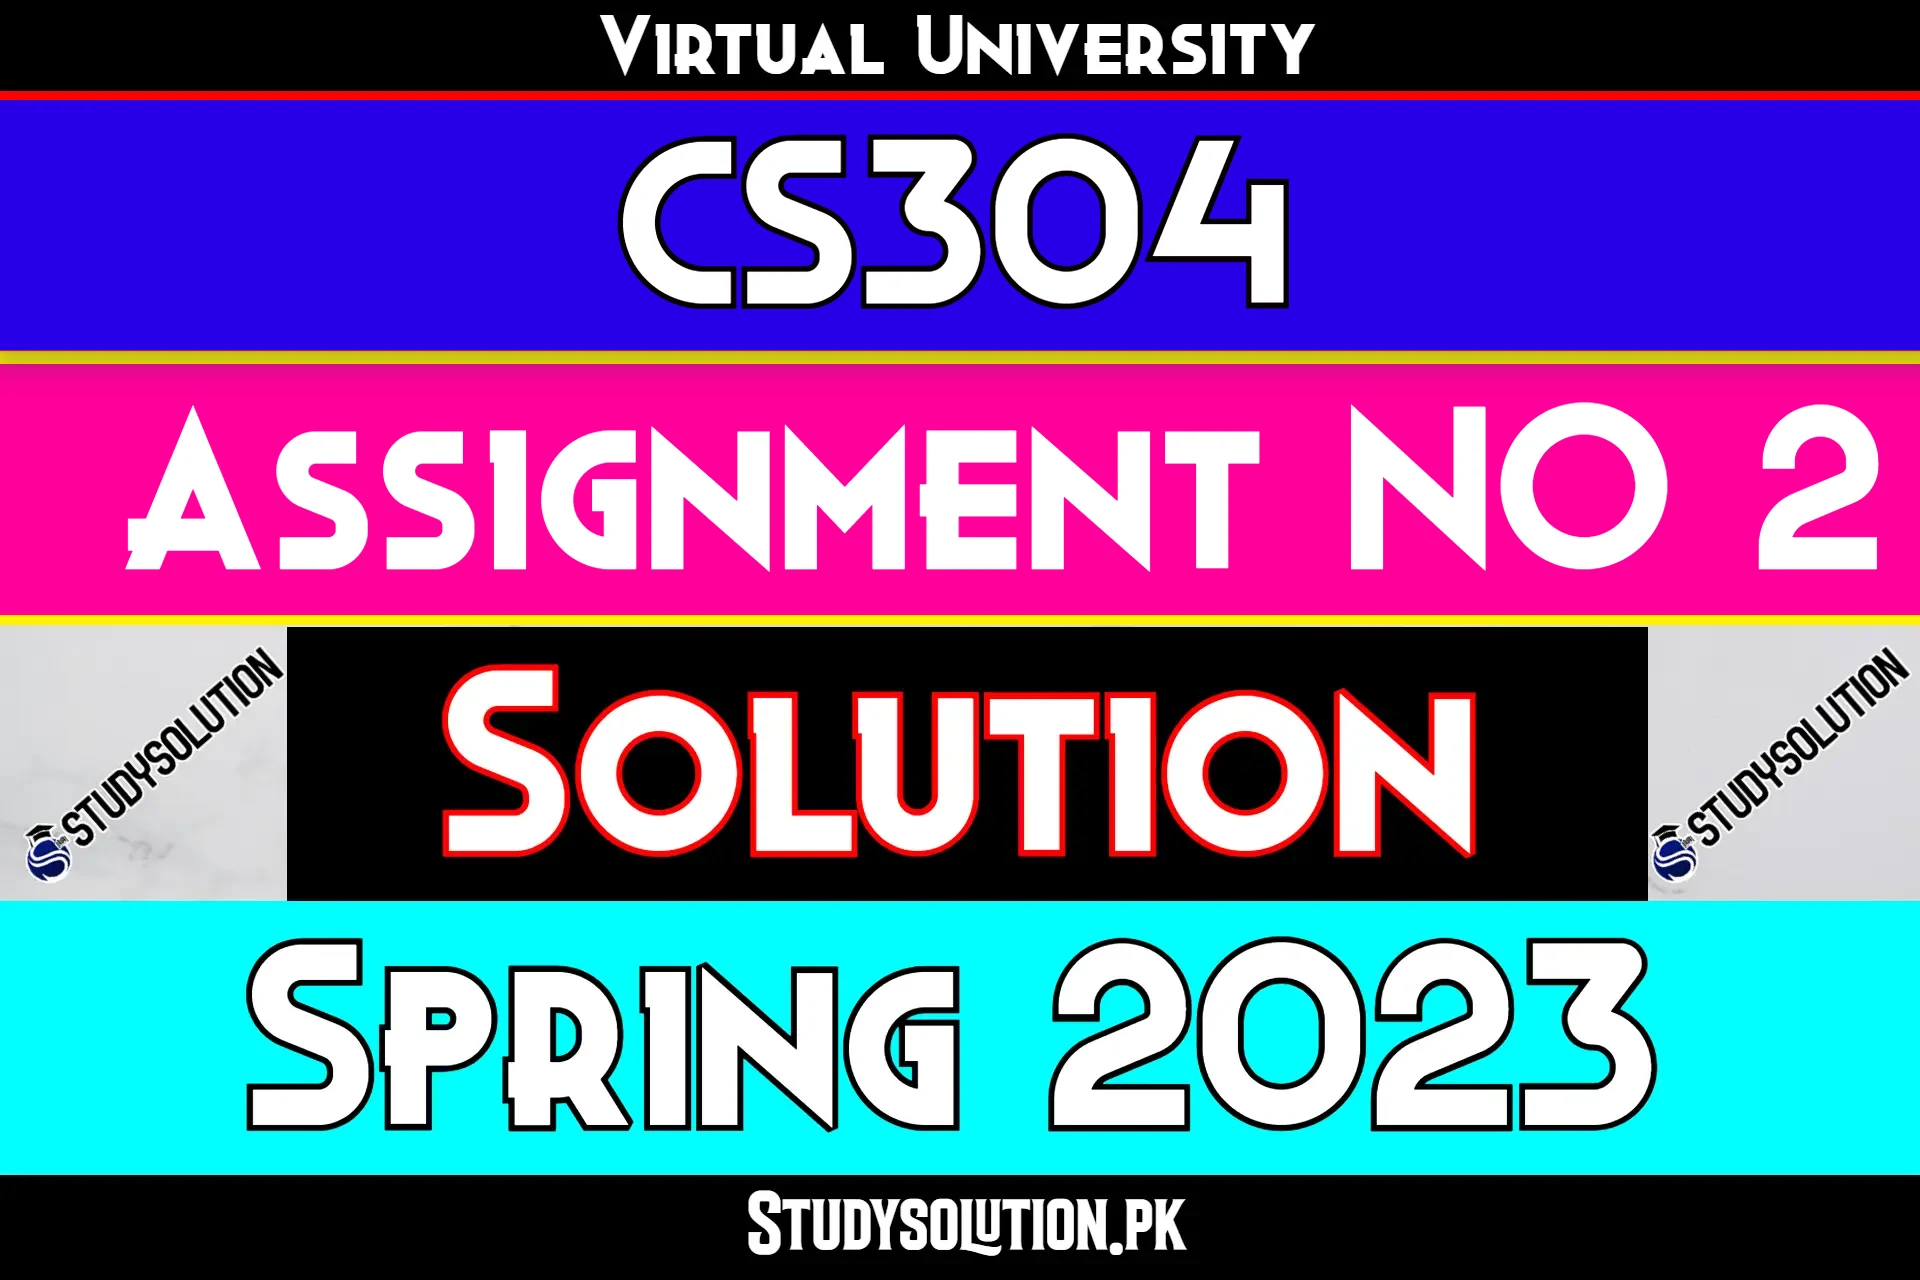 CS304 Assignment No 2 Solution Spring 2023